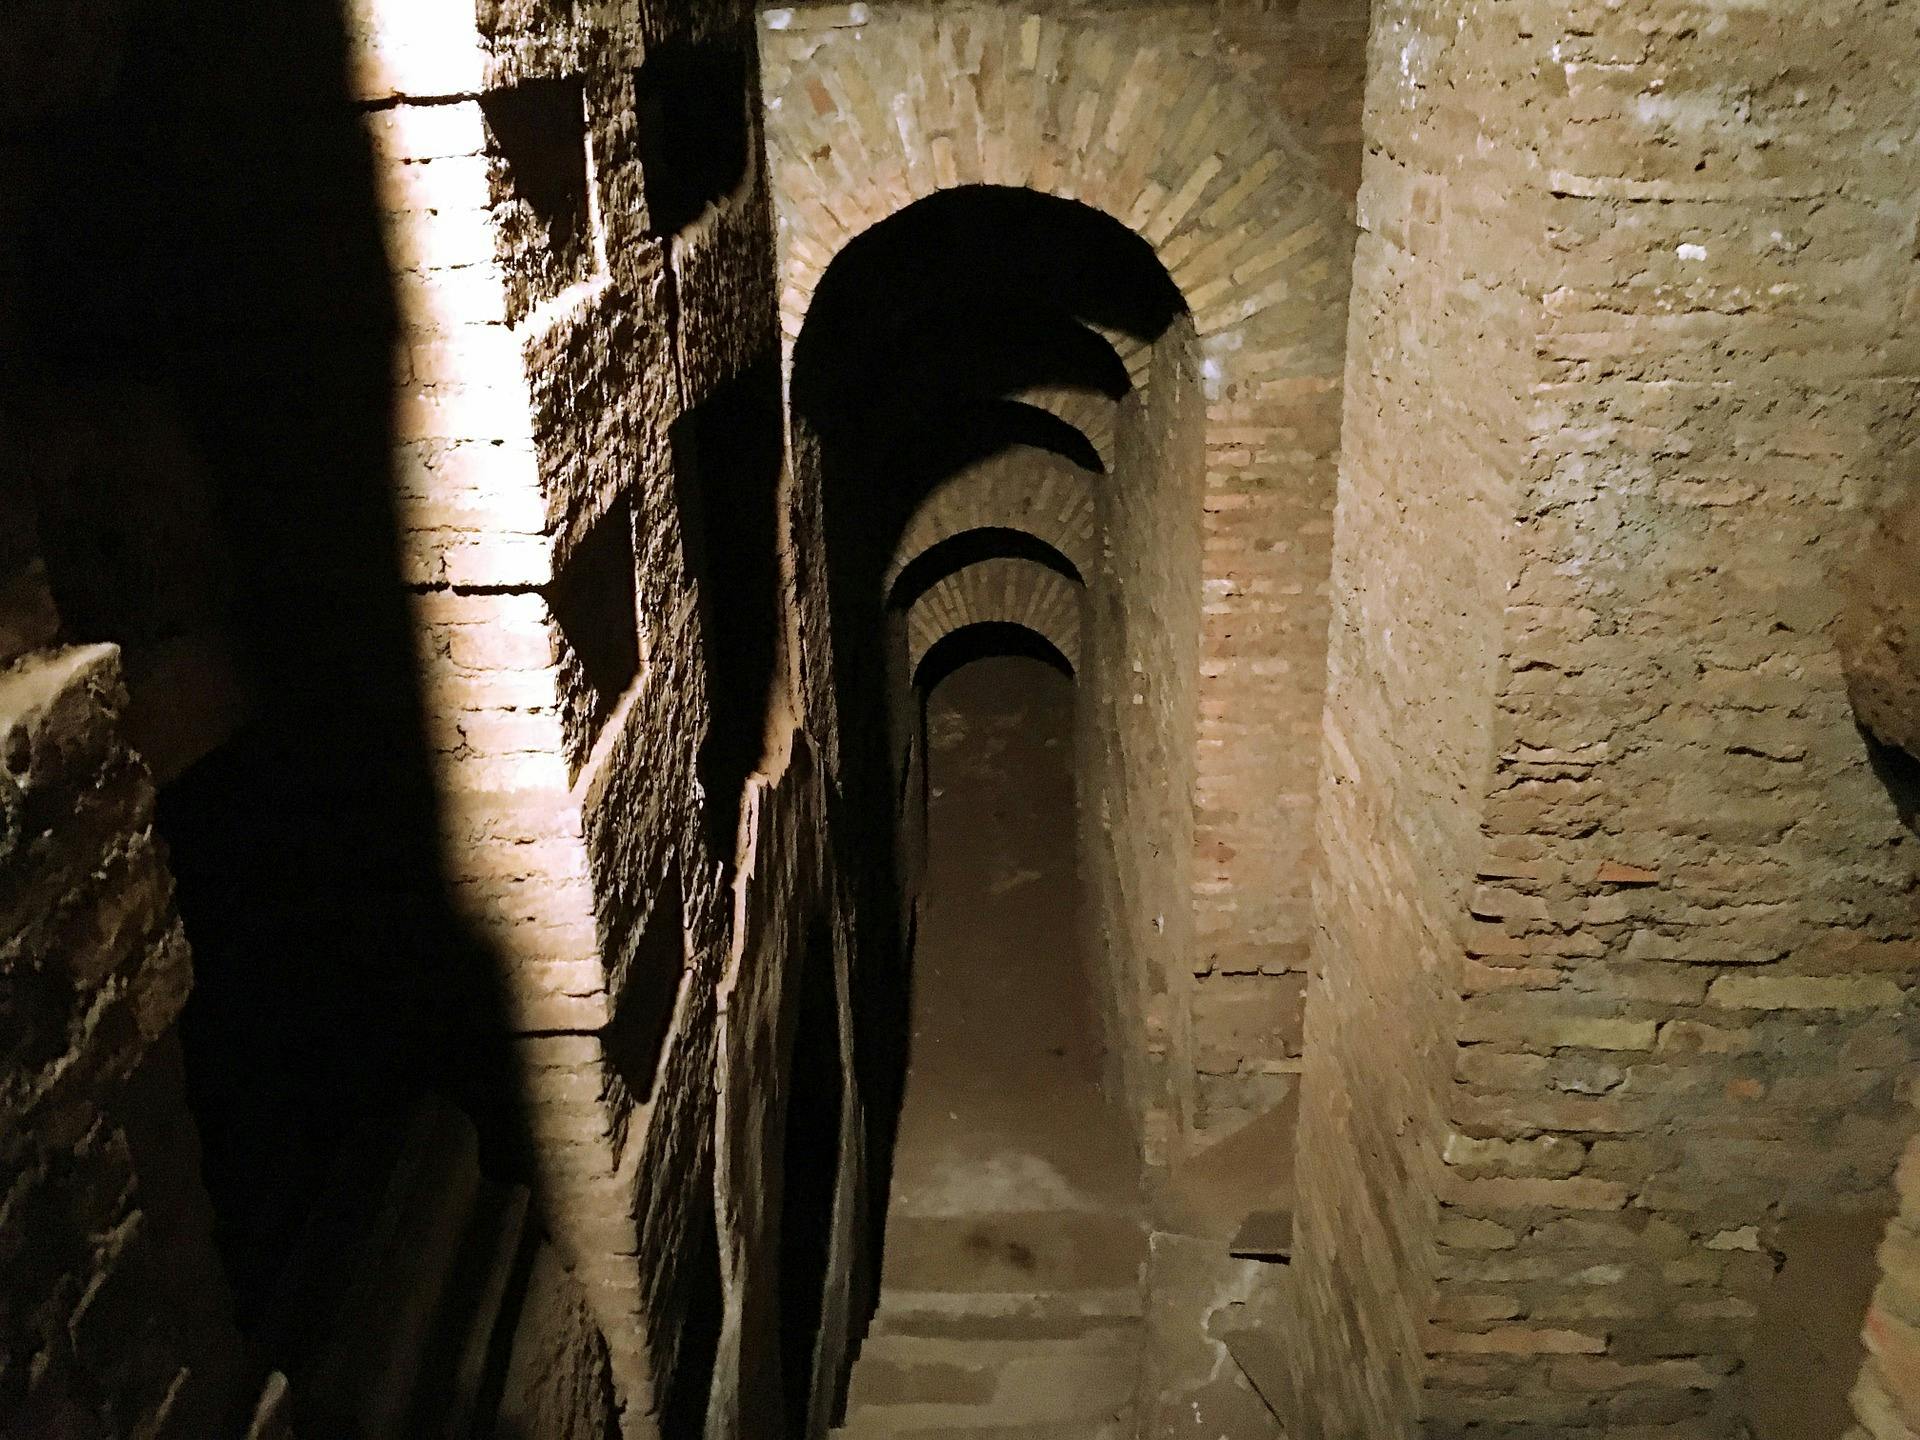 Catacombe di Domitilla